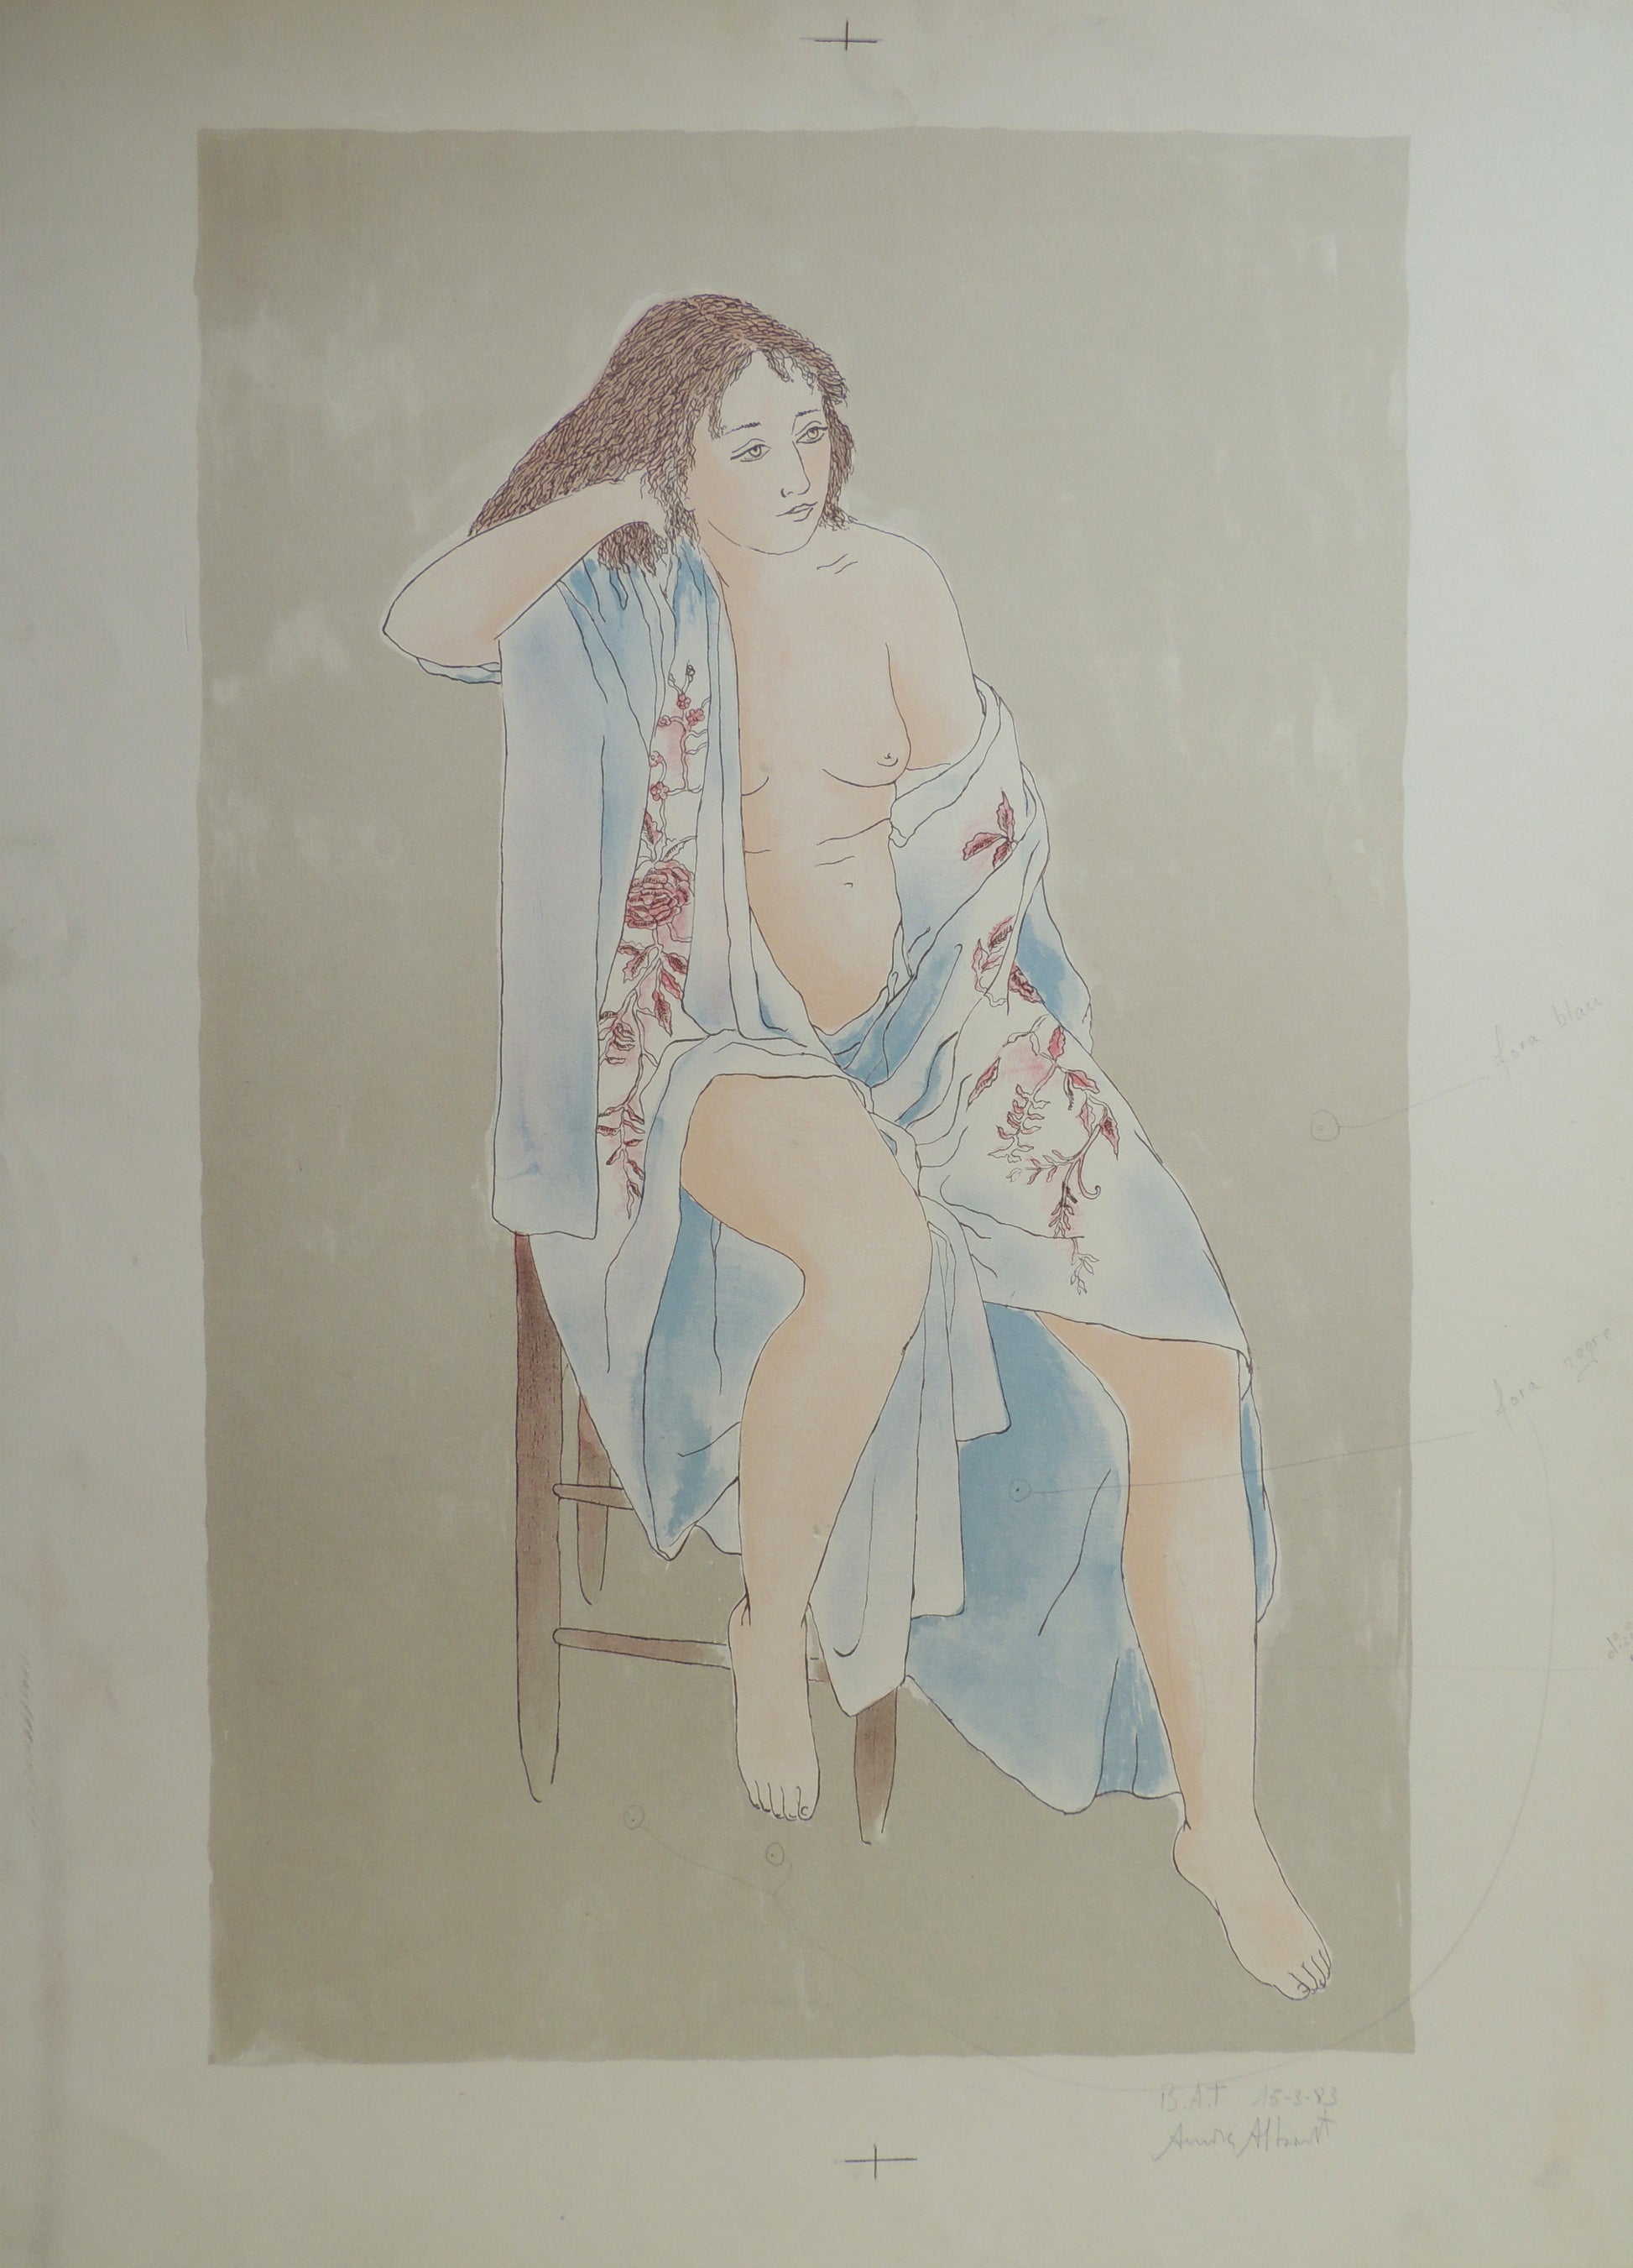 Aurora Altisent litografia desnudo sentado version Gaudifond 